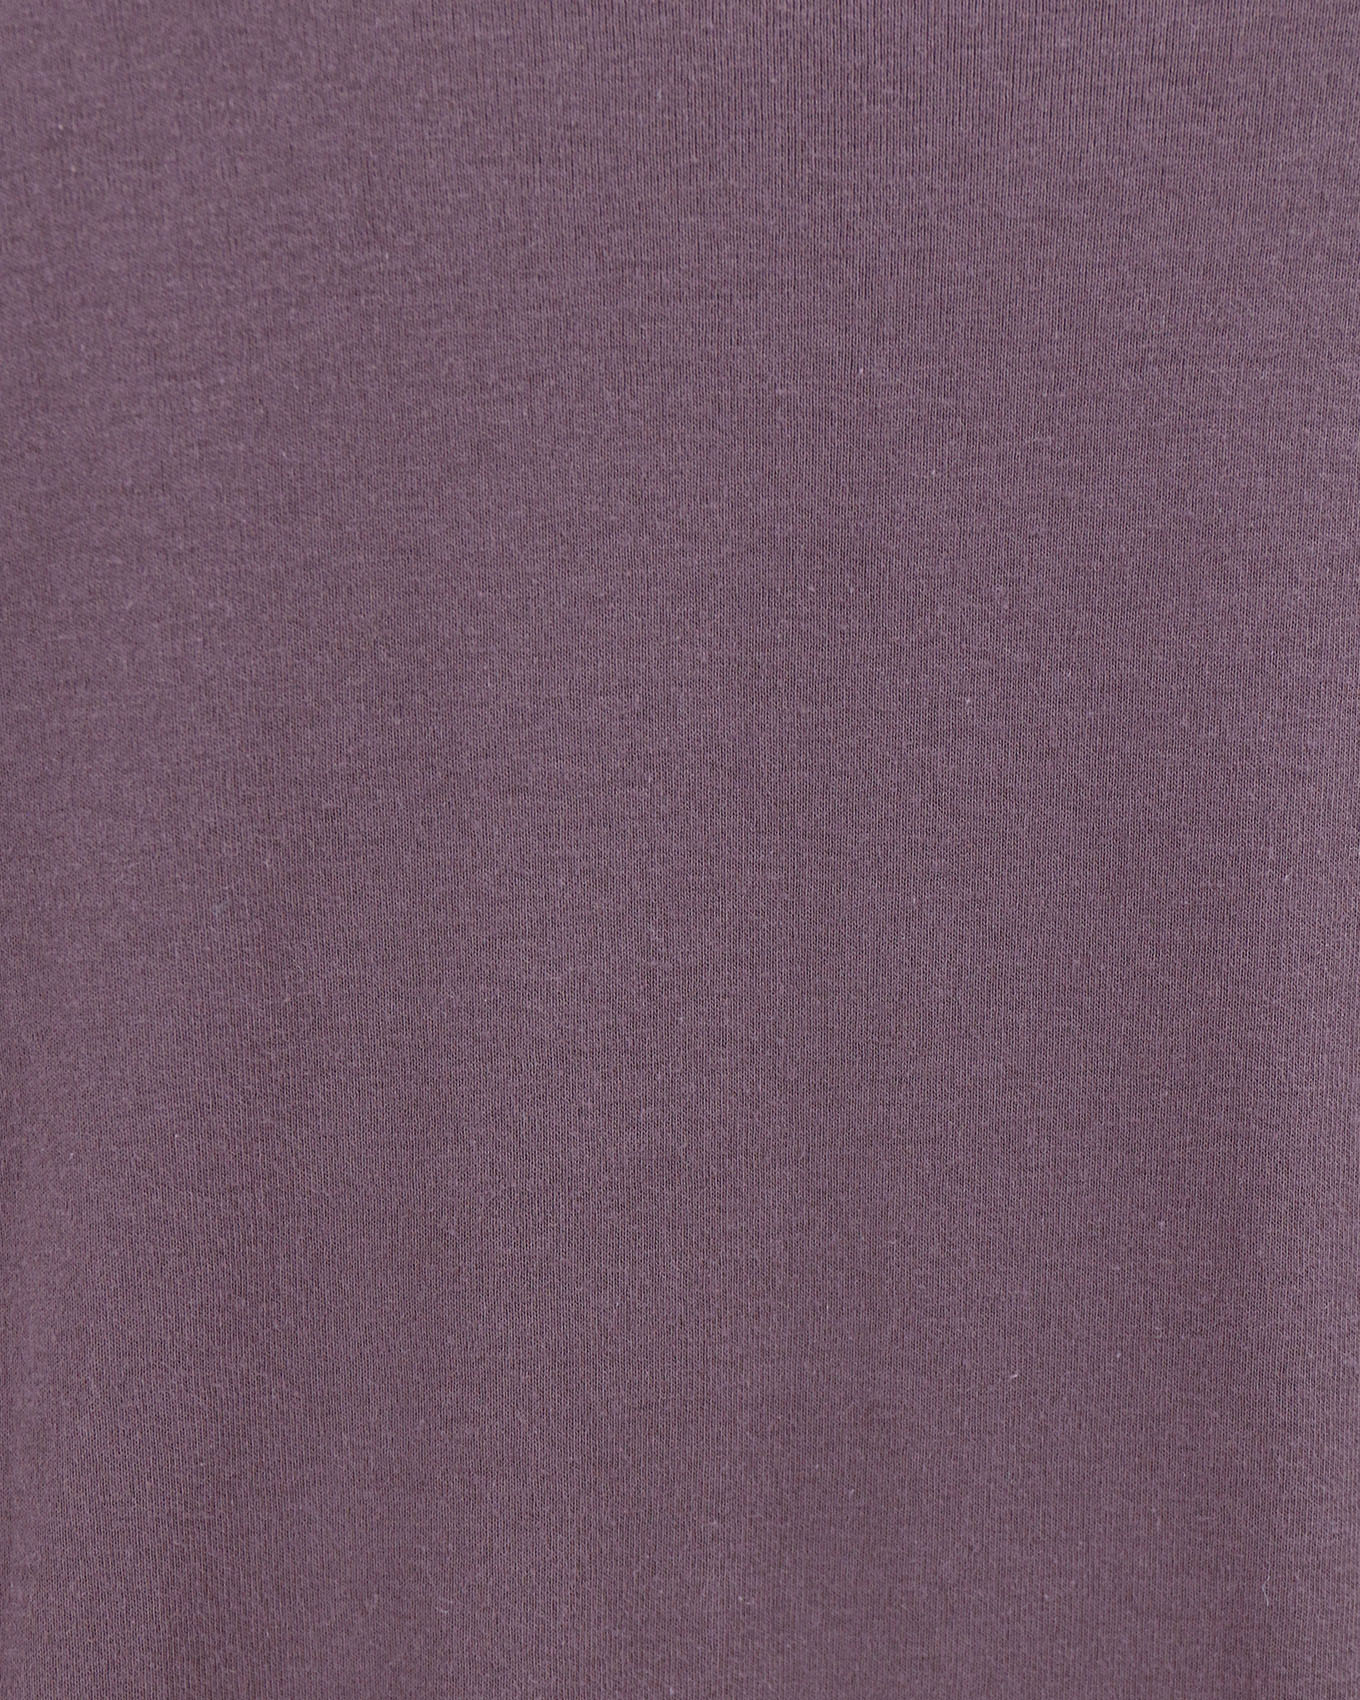 fabric view of purple long sleeve tee